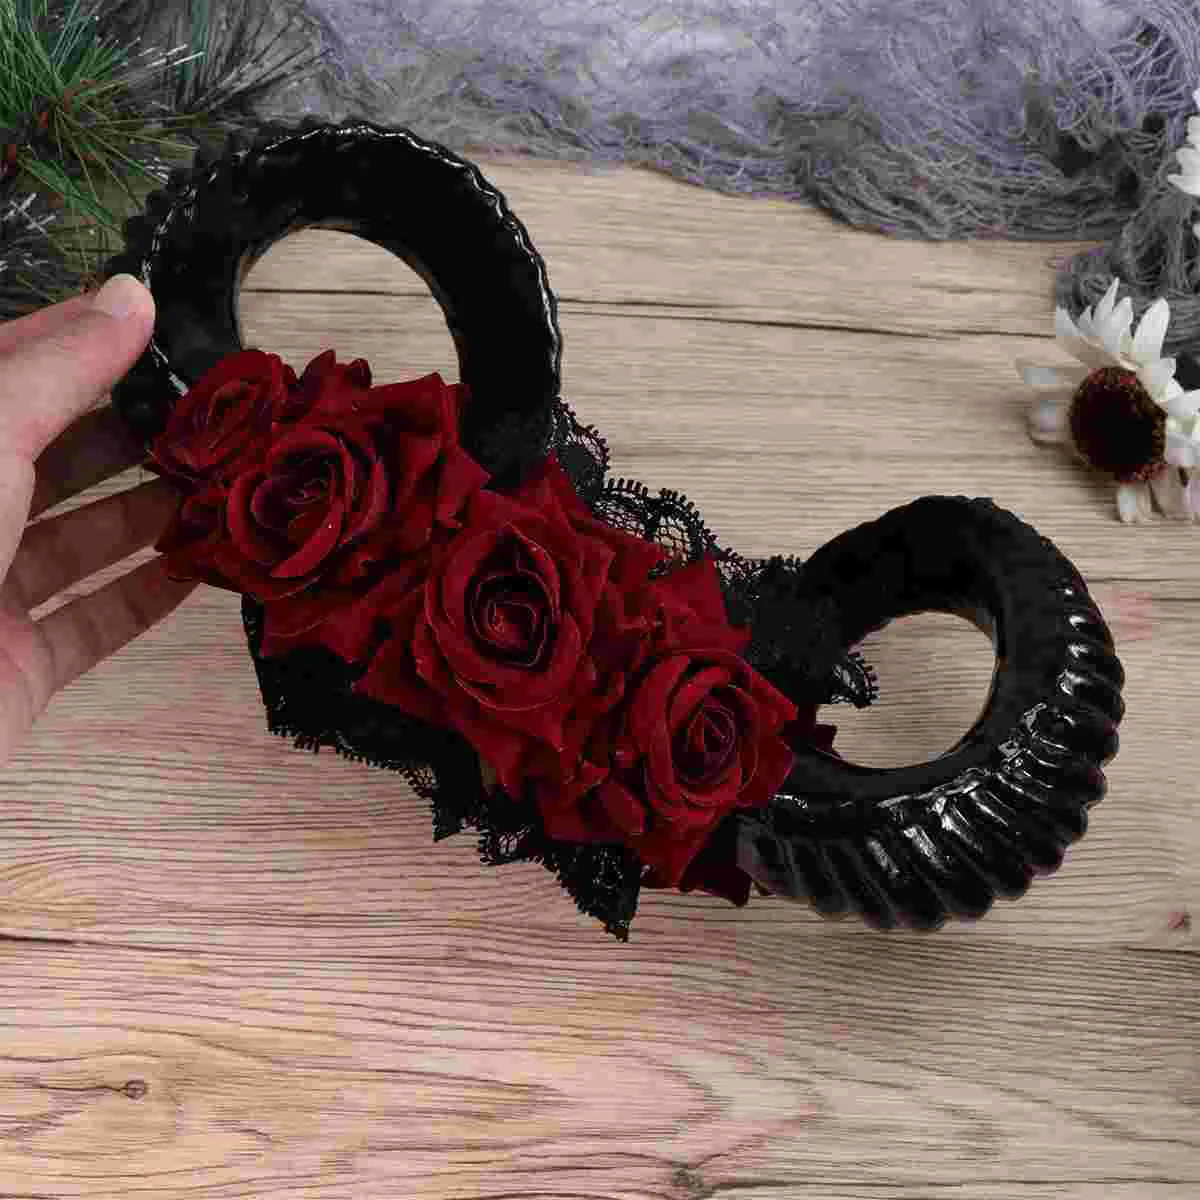 

Headband Horn Hornscosplay Blacksheep Gothic Head Costume Flower Headpiece Hair Vintage Flowershoop Prop Bands Large Rose Ox